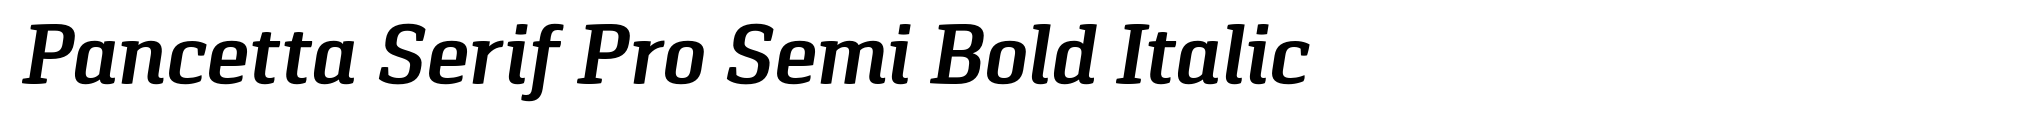 Pancetta Serif Pro Semi Bold Italic image